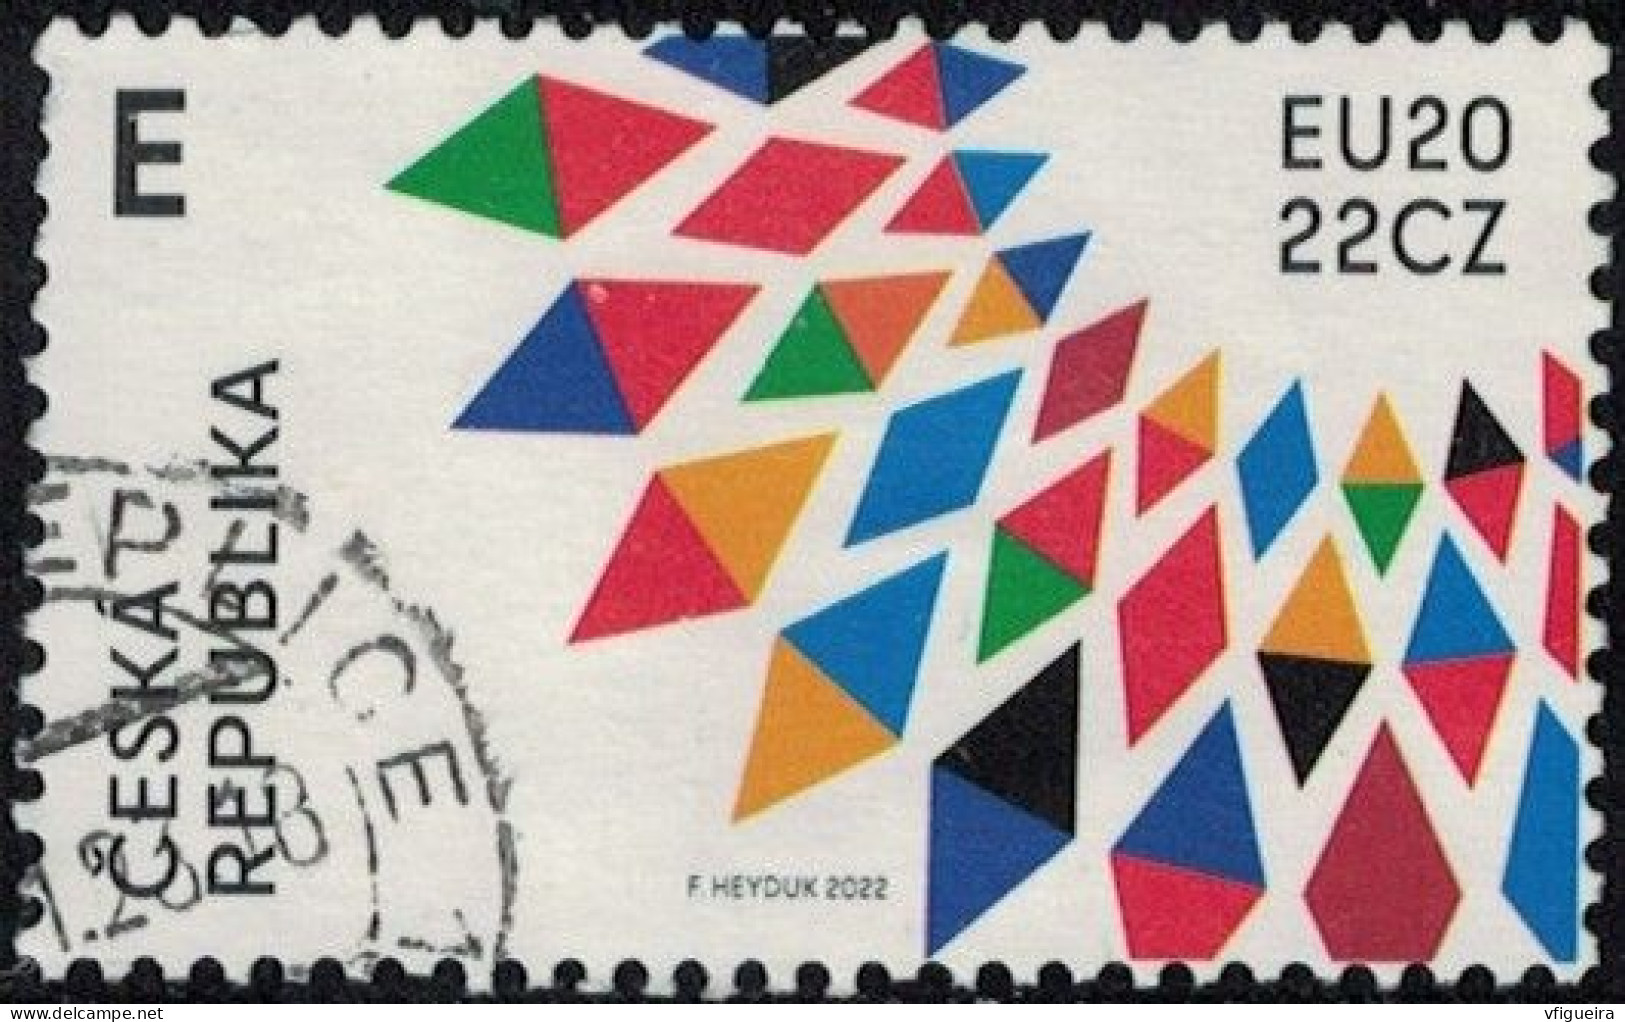 République Tchèque 2022 Oblitéré Used Présidence Tchèque De L'Union Européenne Y&T CZ 1014 SU - Used Stamps